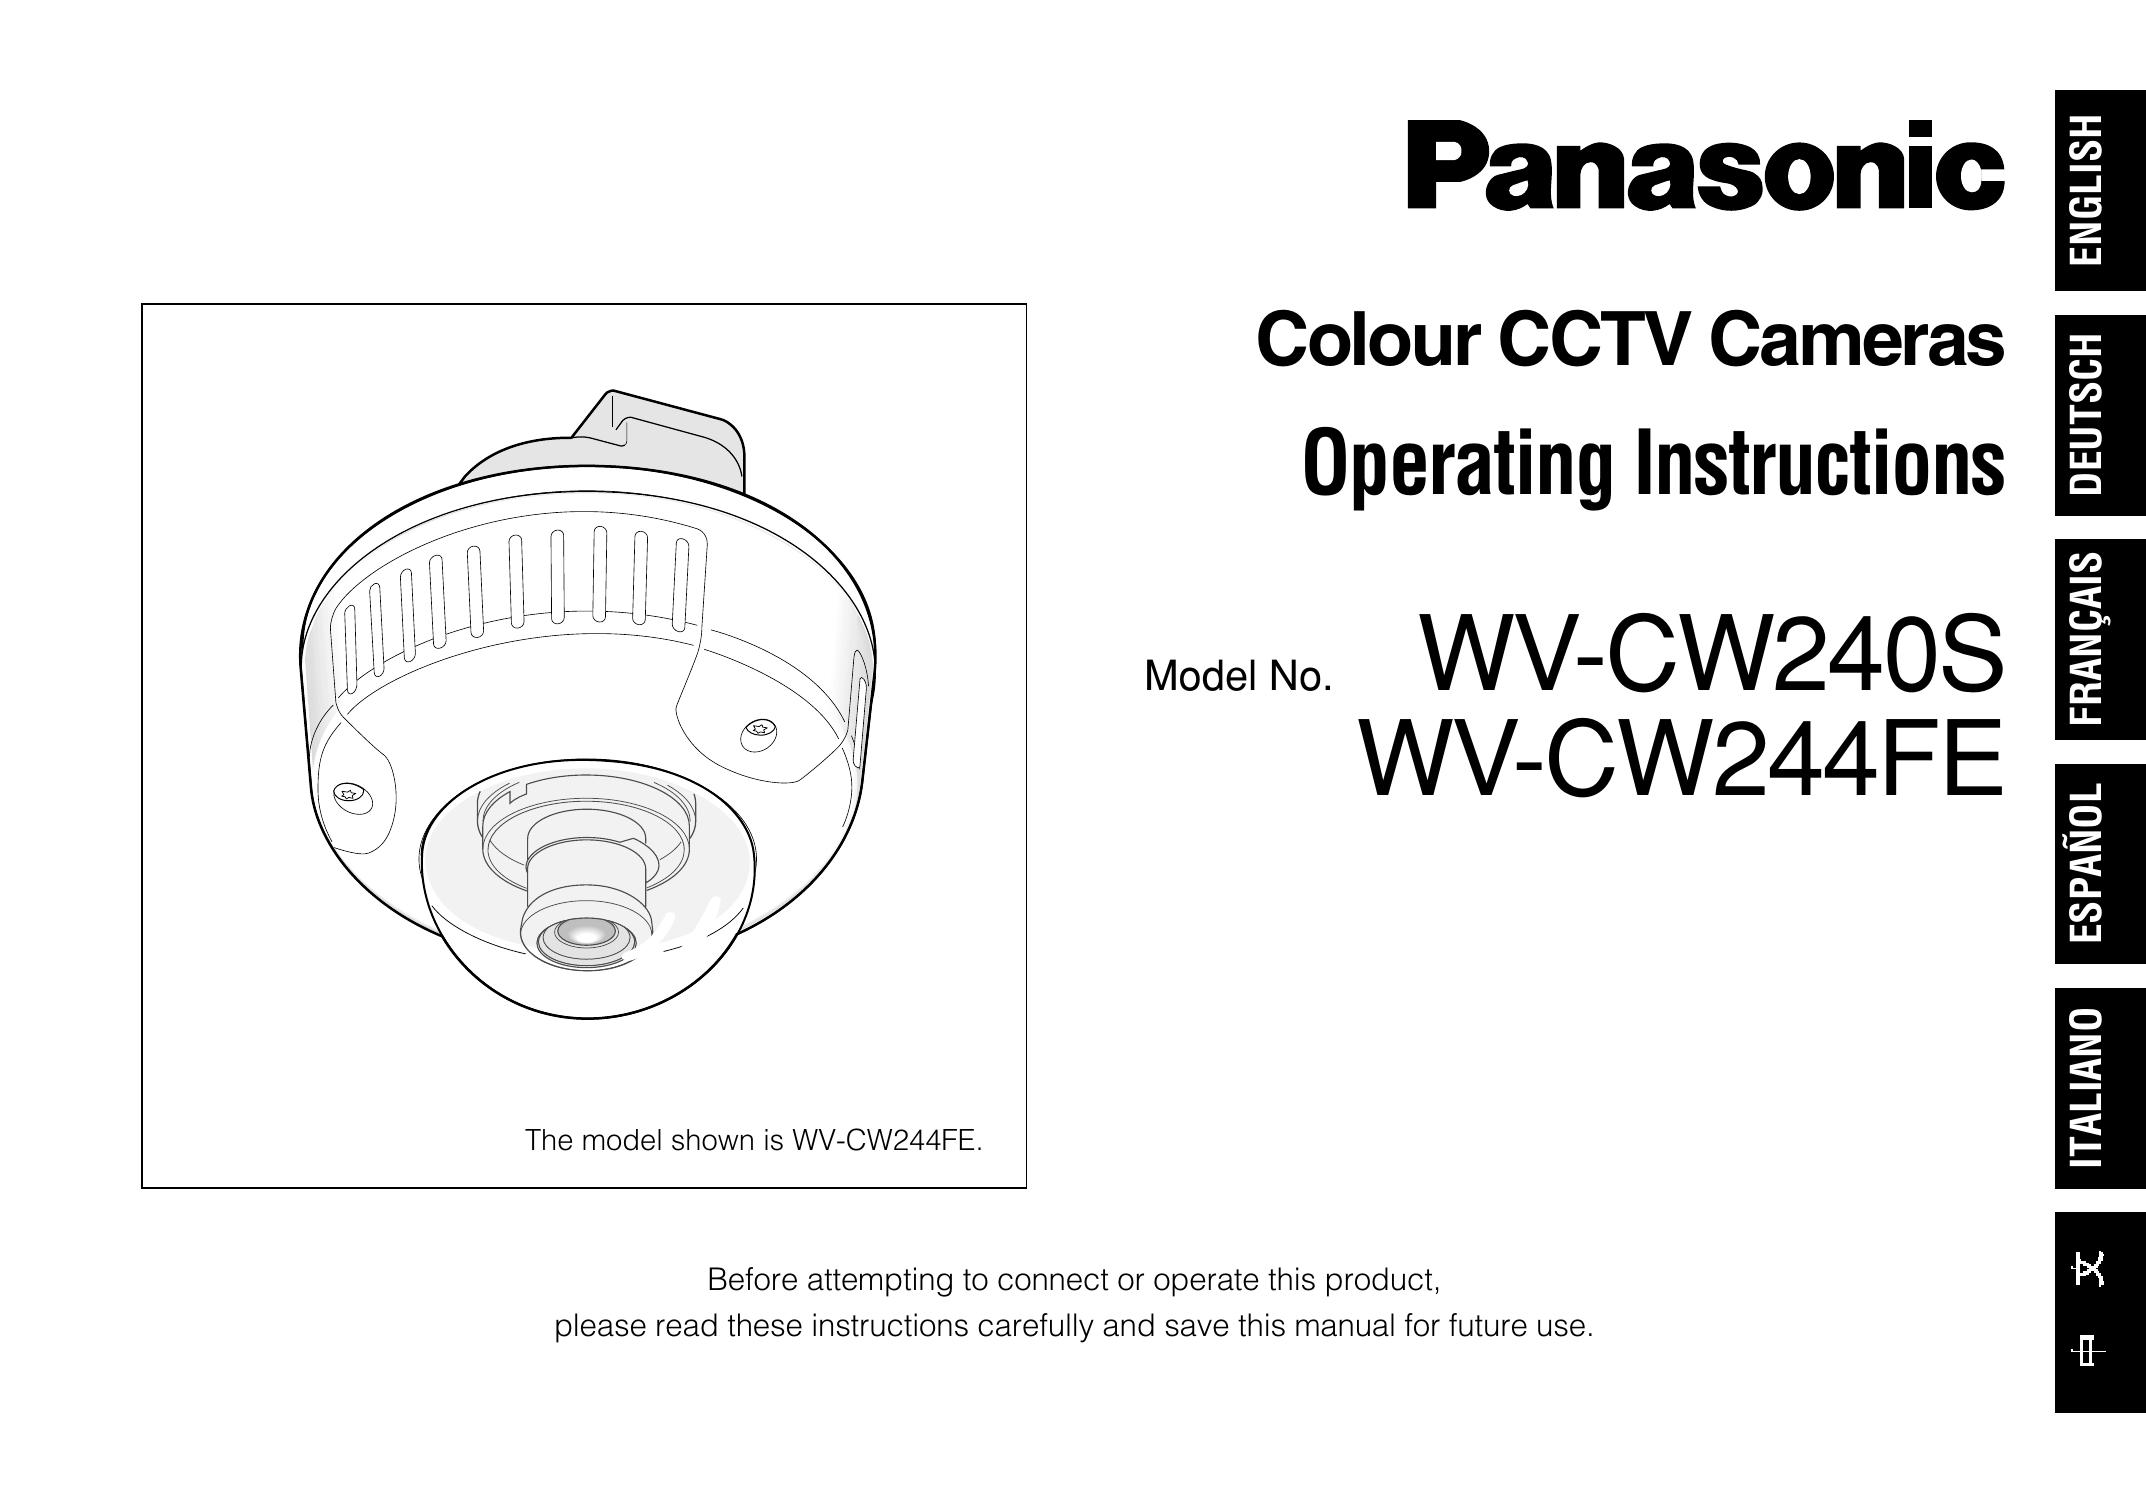 Panasonic WV-CW240S Camera Lens User Manual